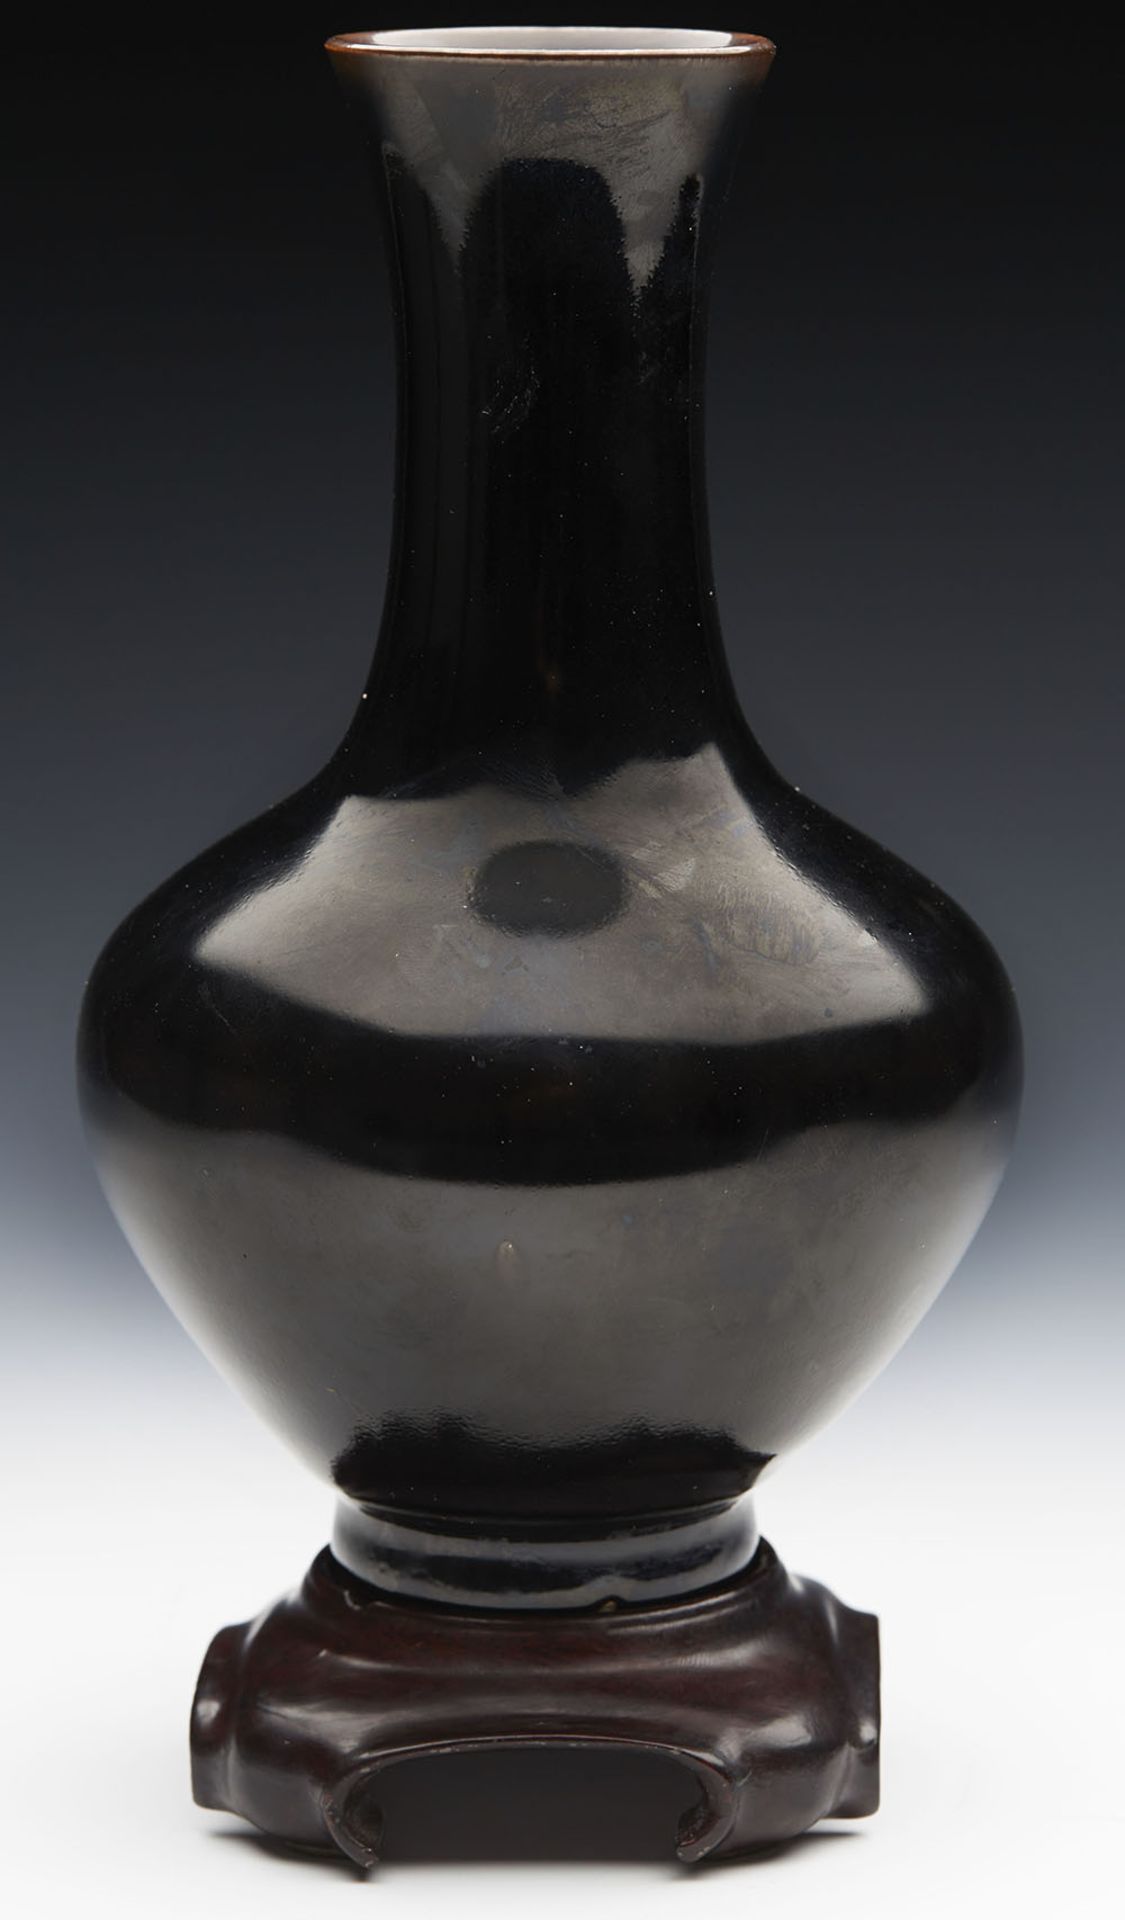 Antique Chinese Kangxi Brown/Black Glazed Bottle Vase 1662-1722 - Image 5 of 8